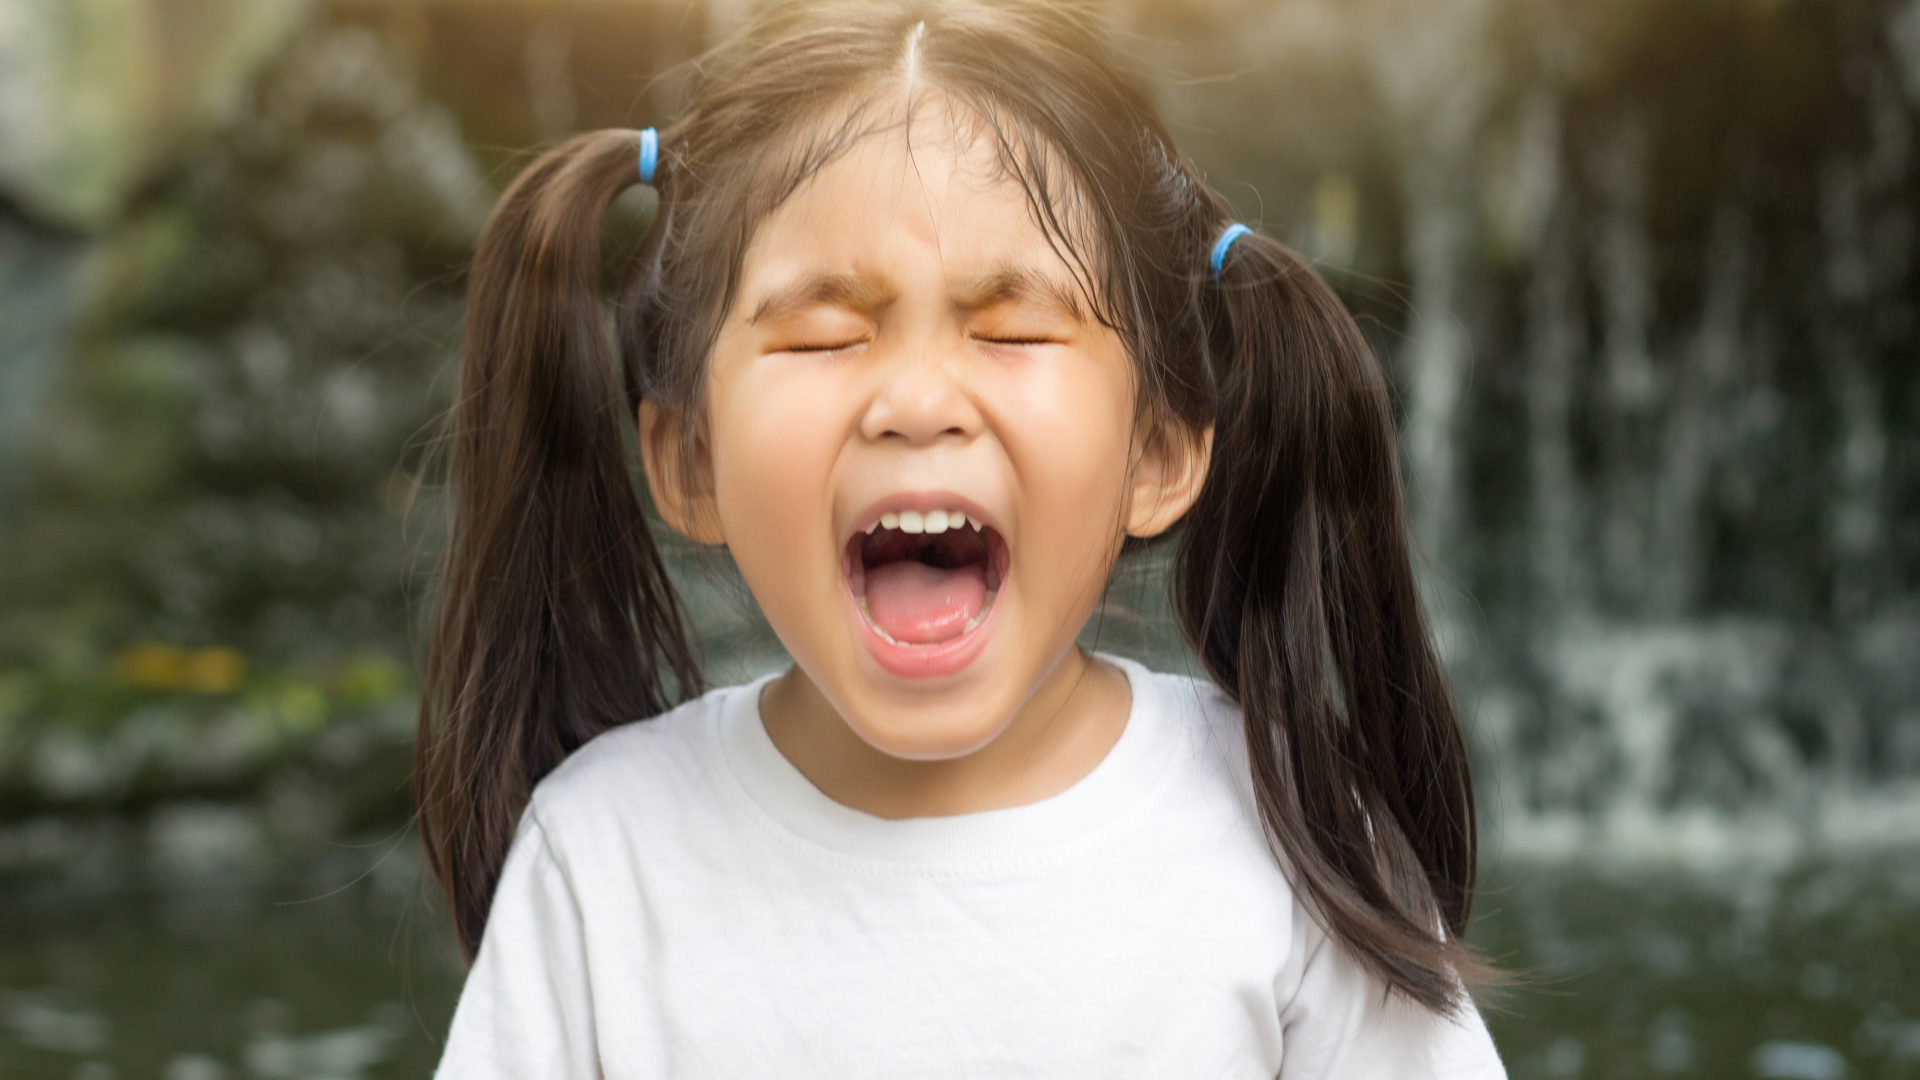 behavioural problem in children throwing tantrum